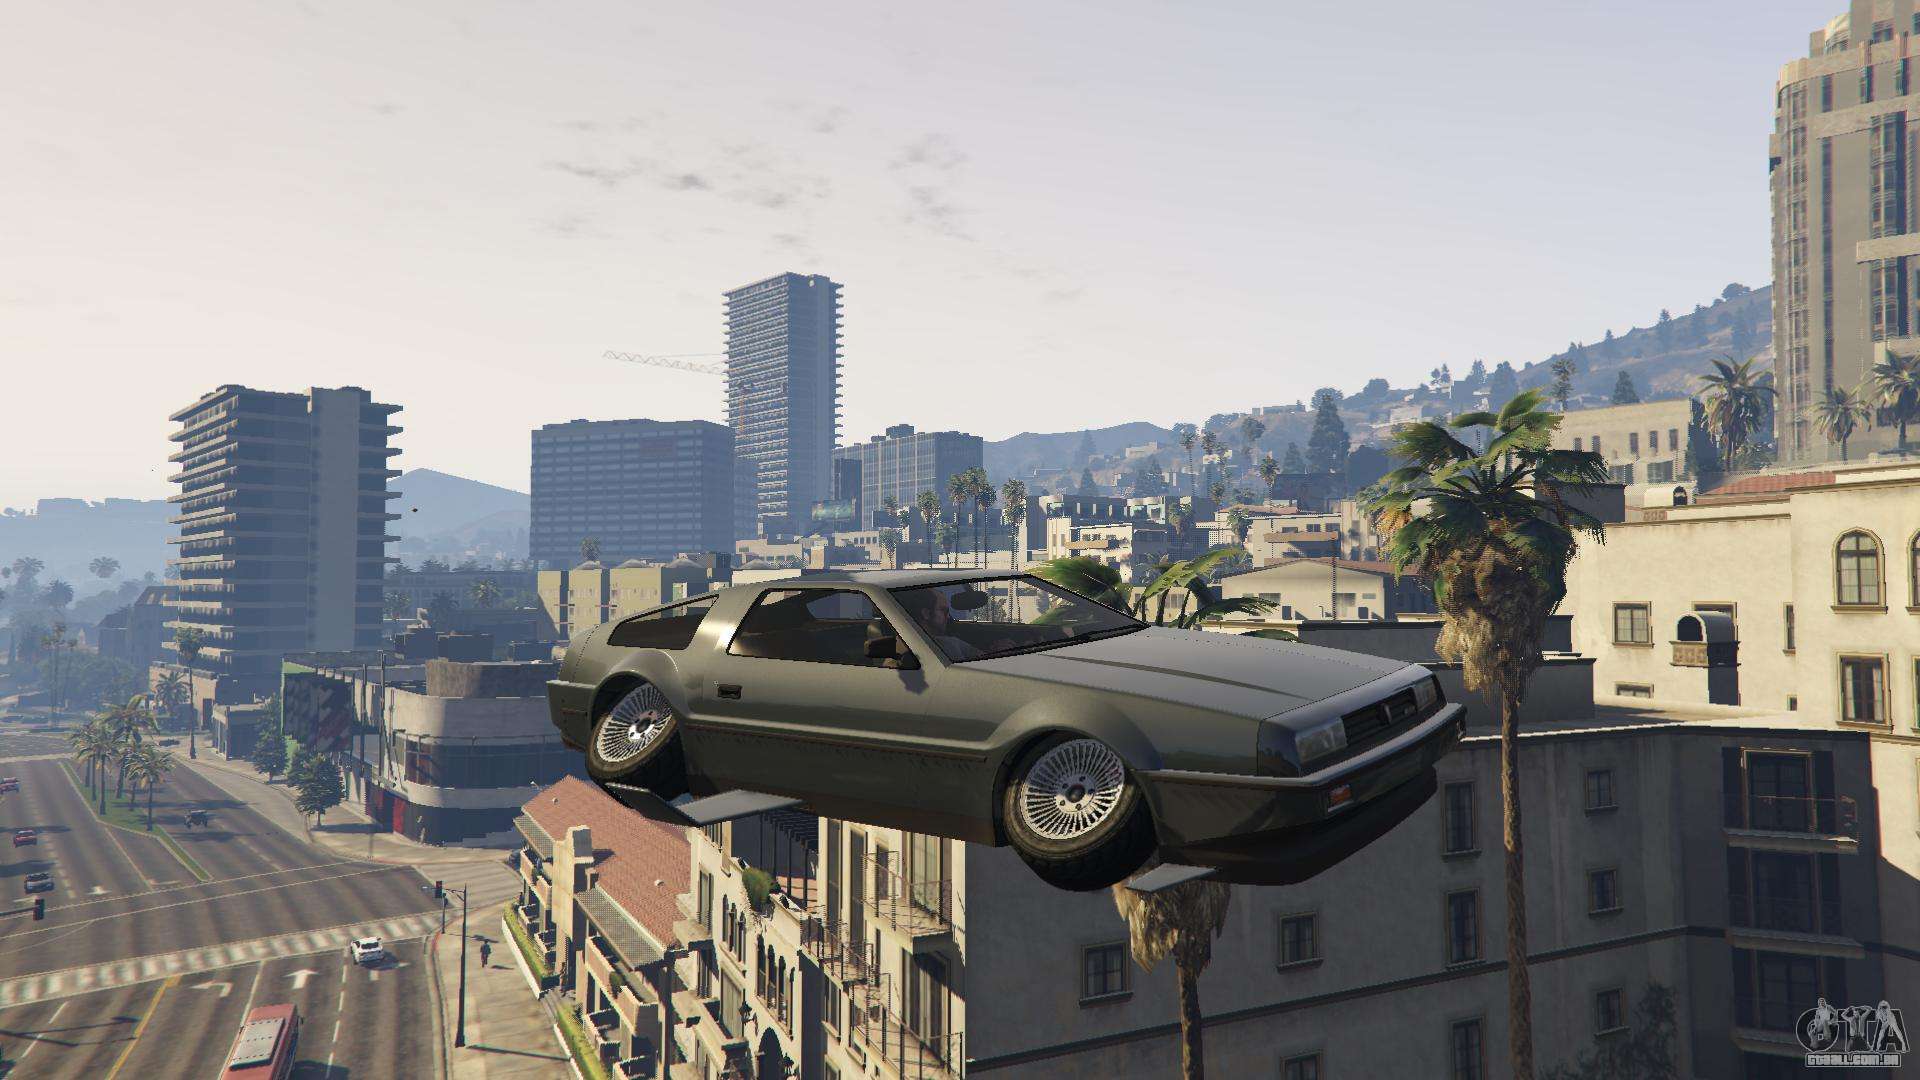 Para voar por um carro em GTA 5 online